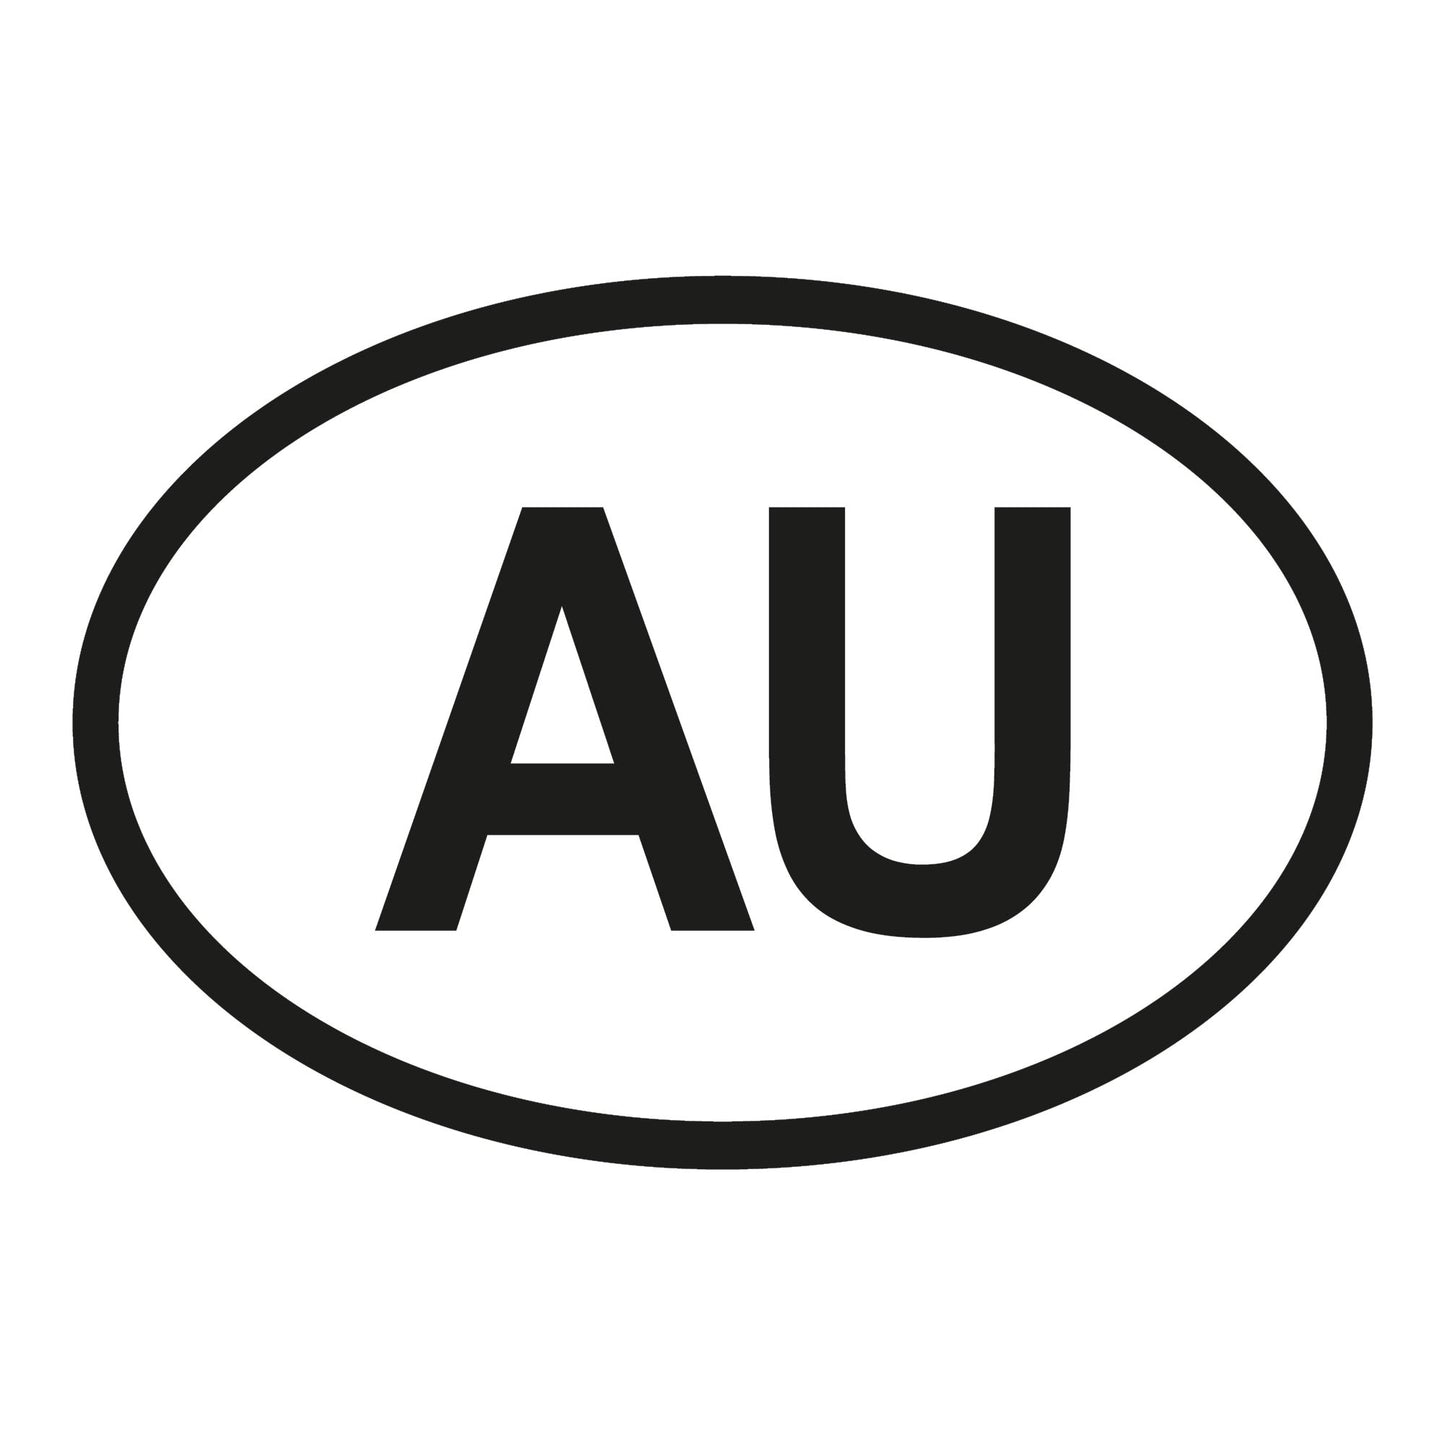 Autoaufkleber - Australien AU - 160x110mm